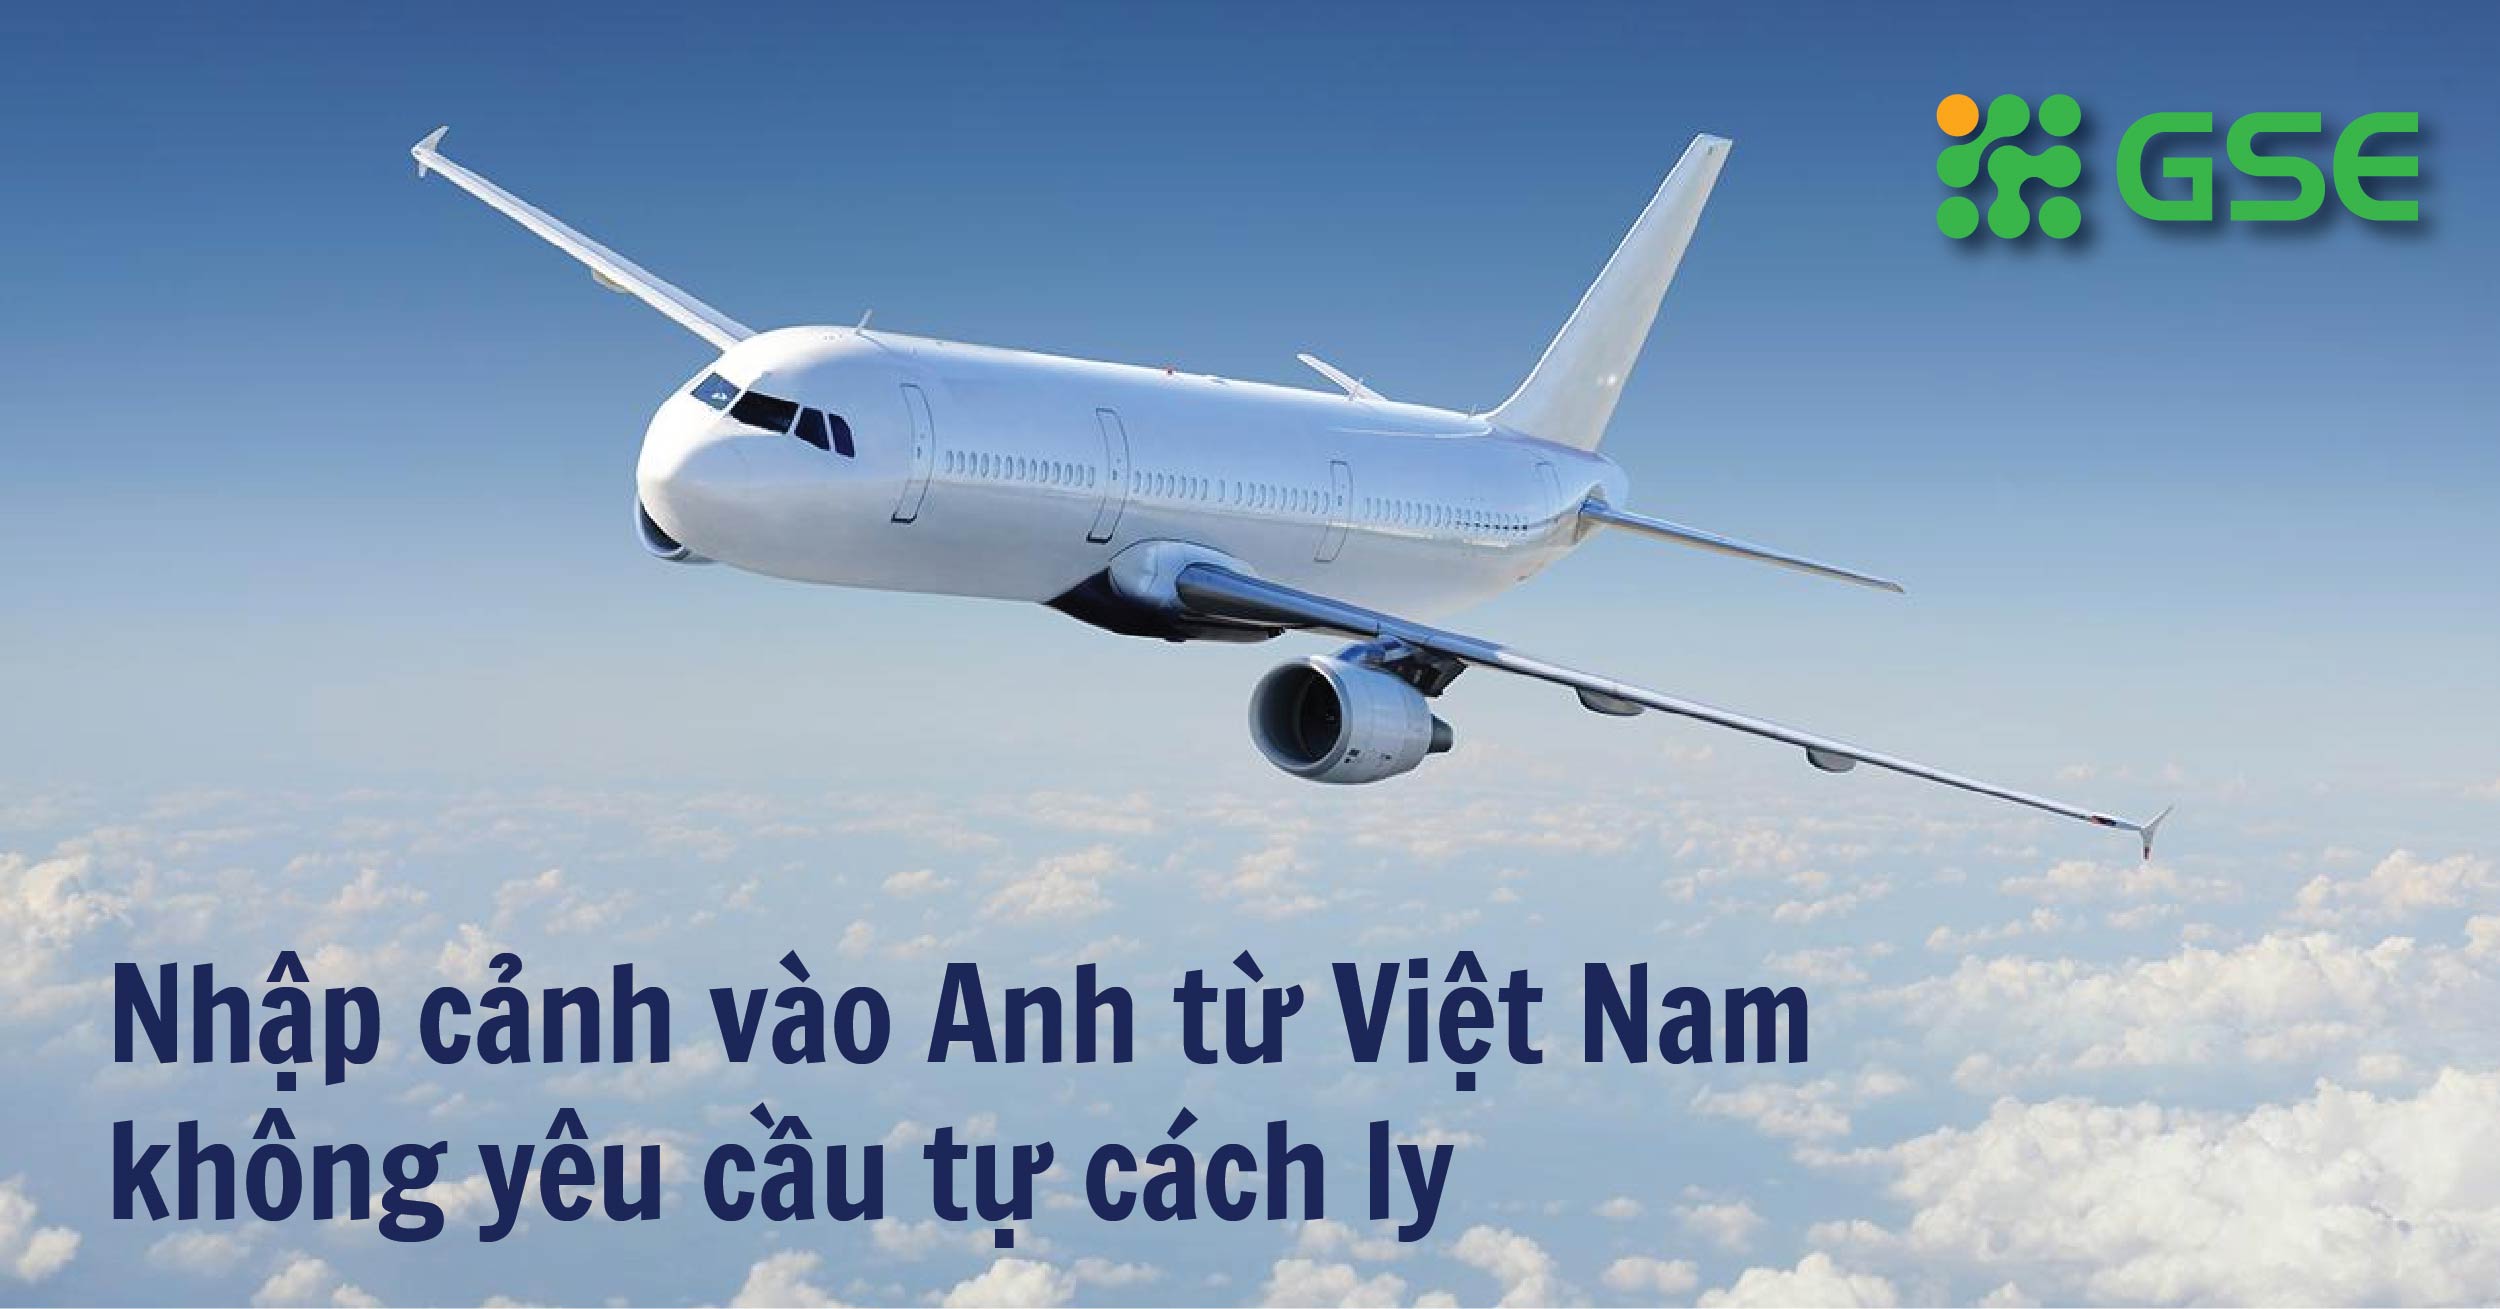 HOT NEWS: người từ Việt Nam nhập cảnh vào Anh không yêu cầu tự cách ly